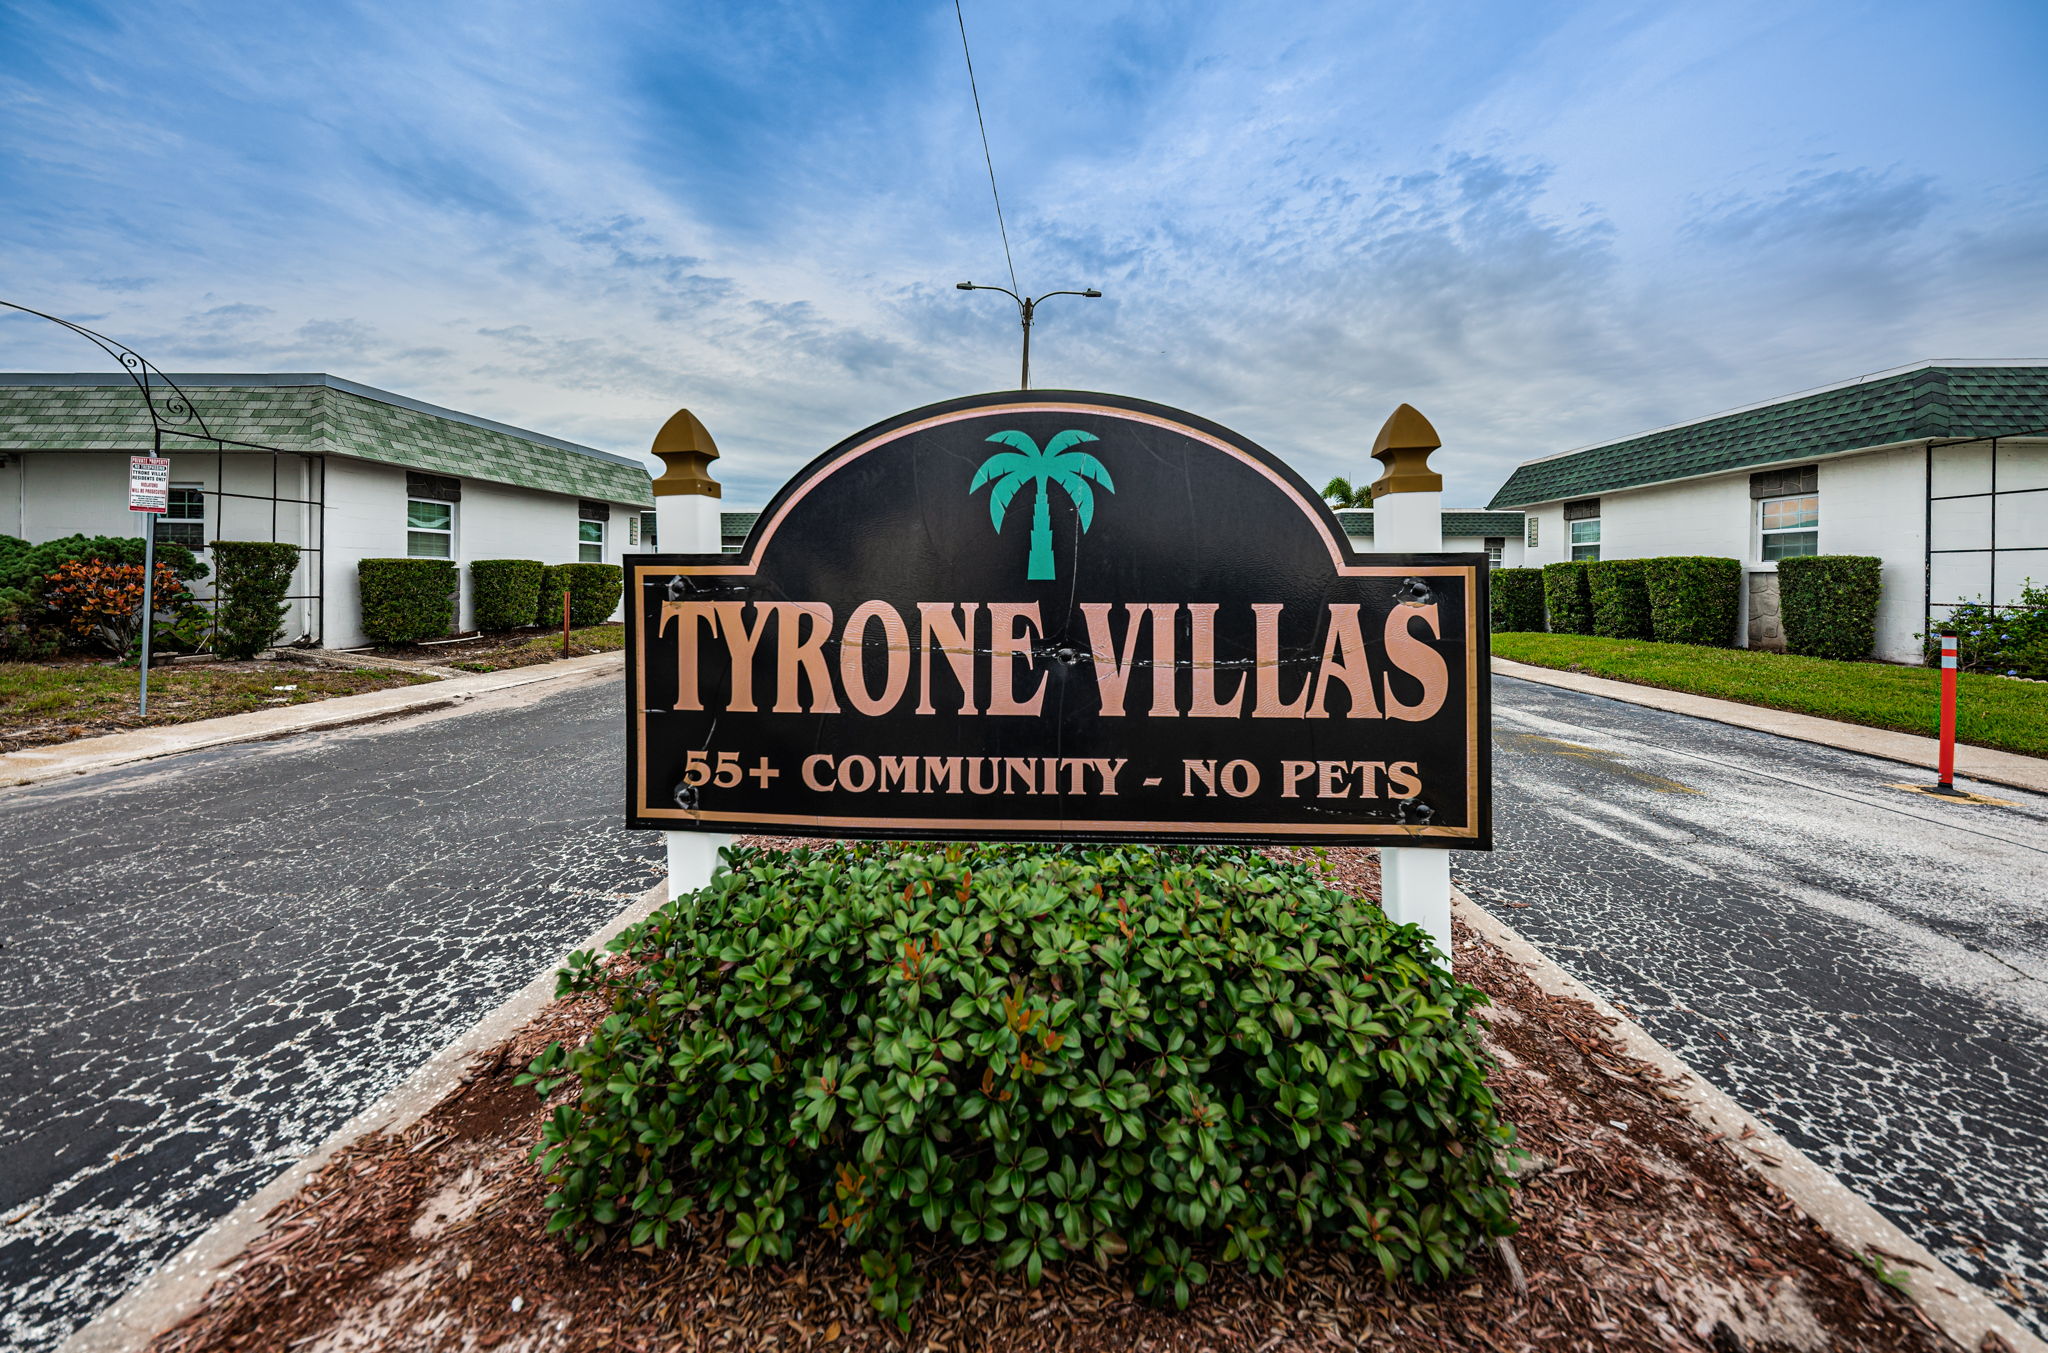 1-Tyrone Villas